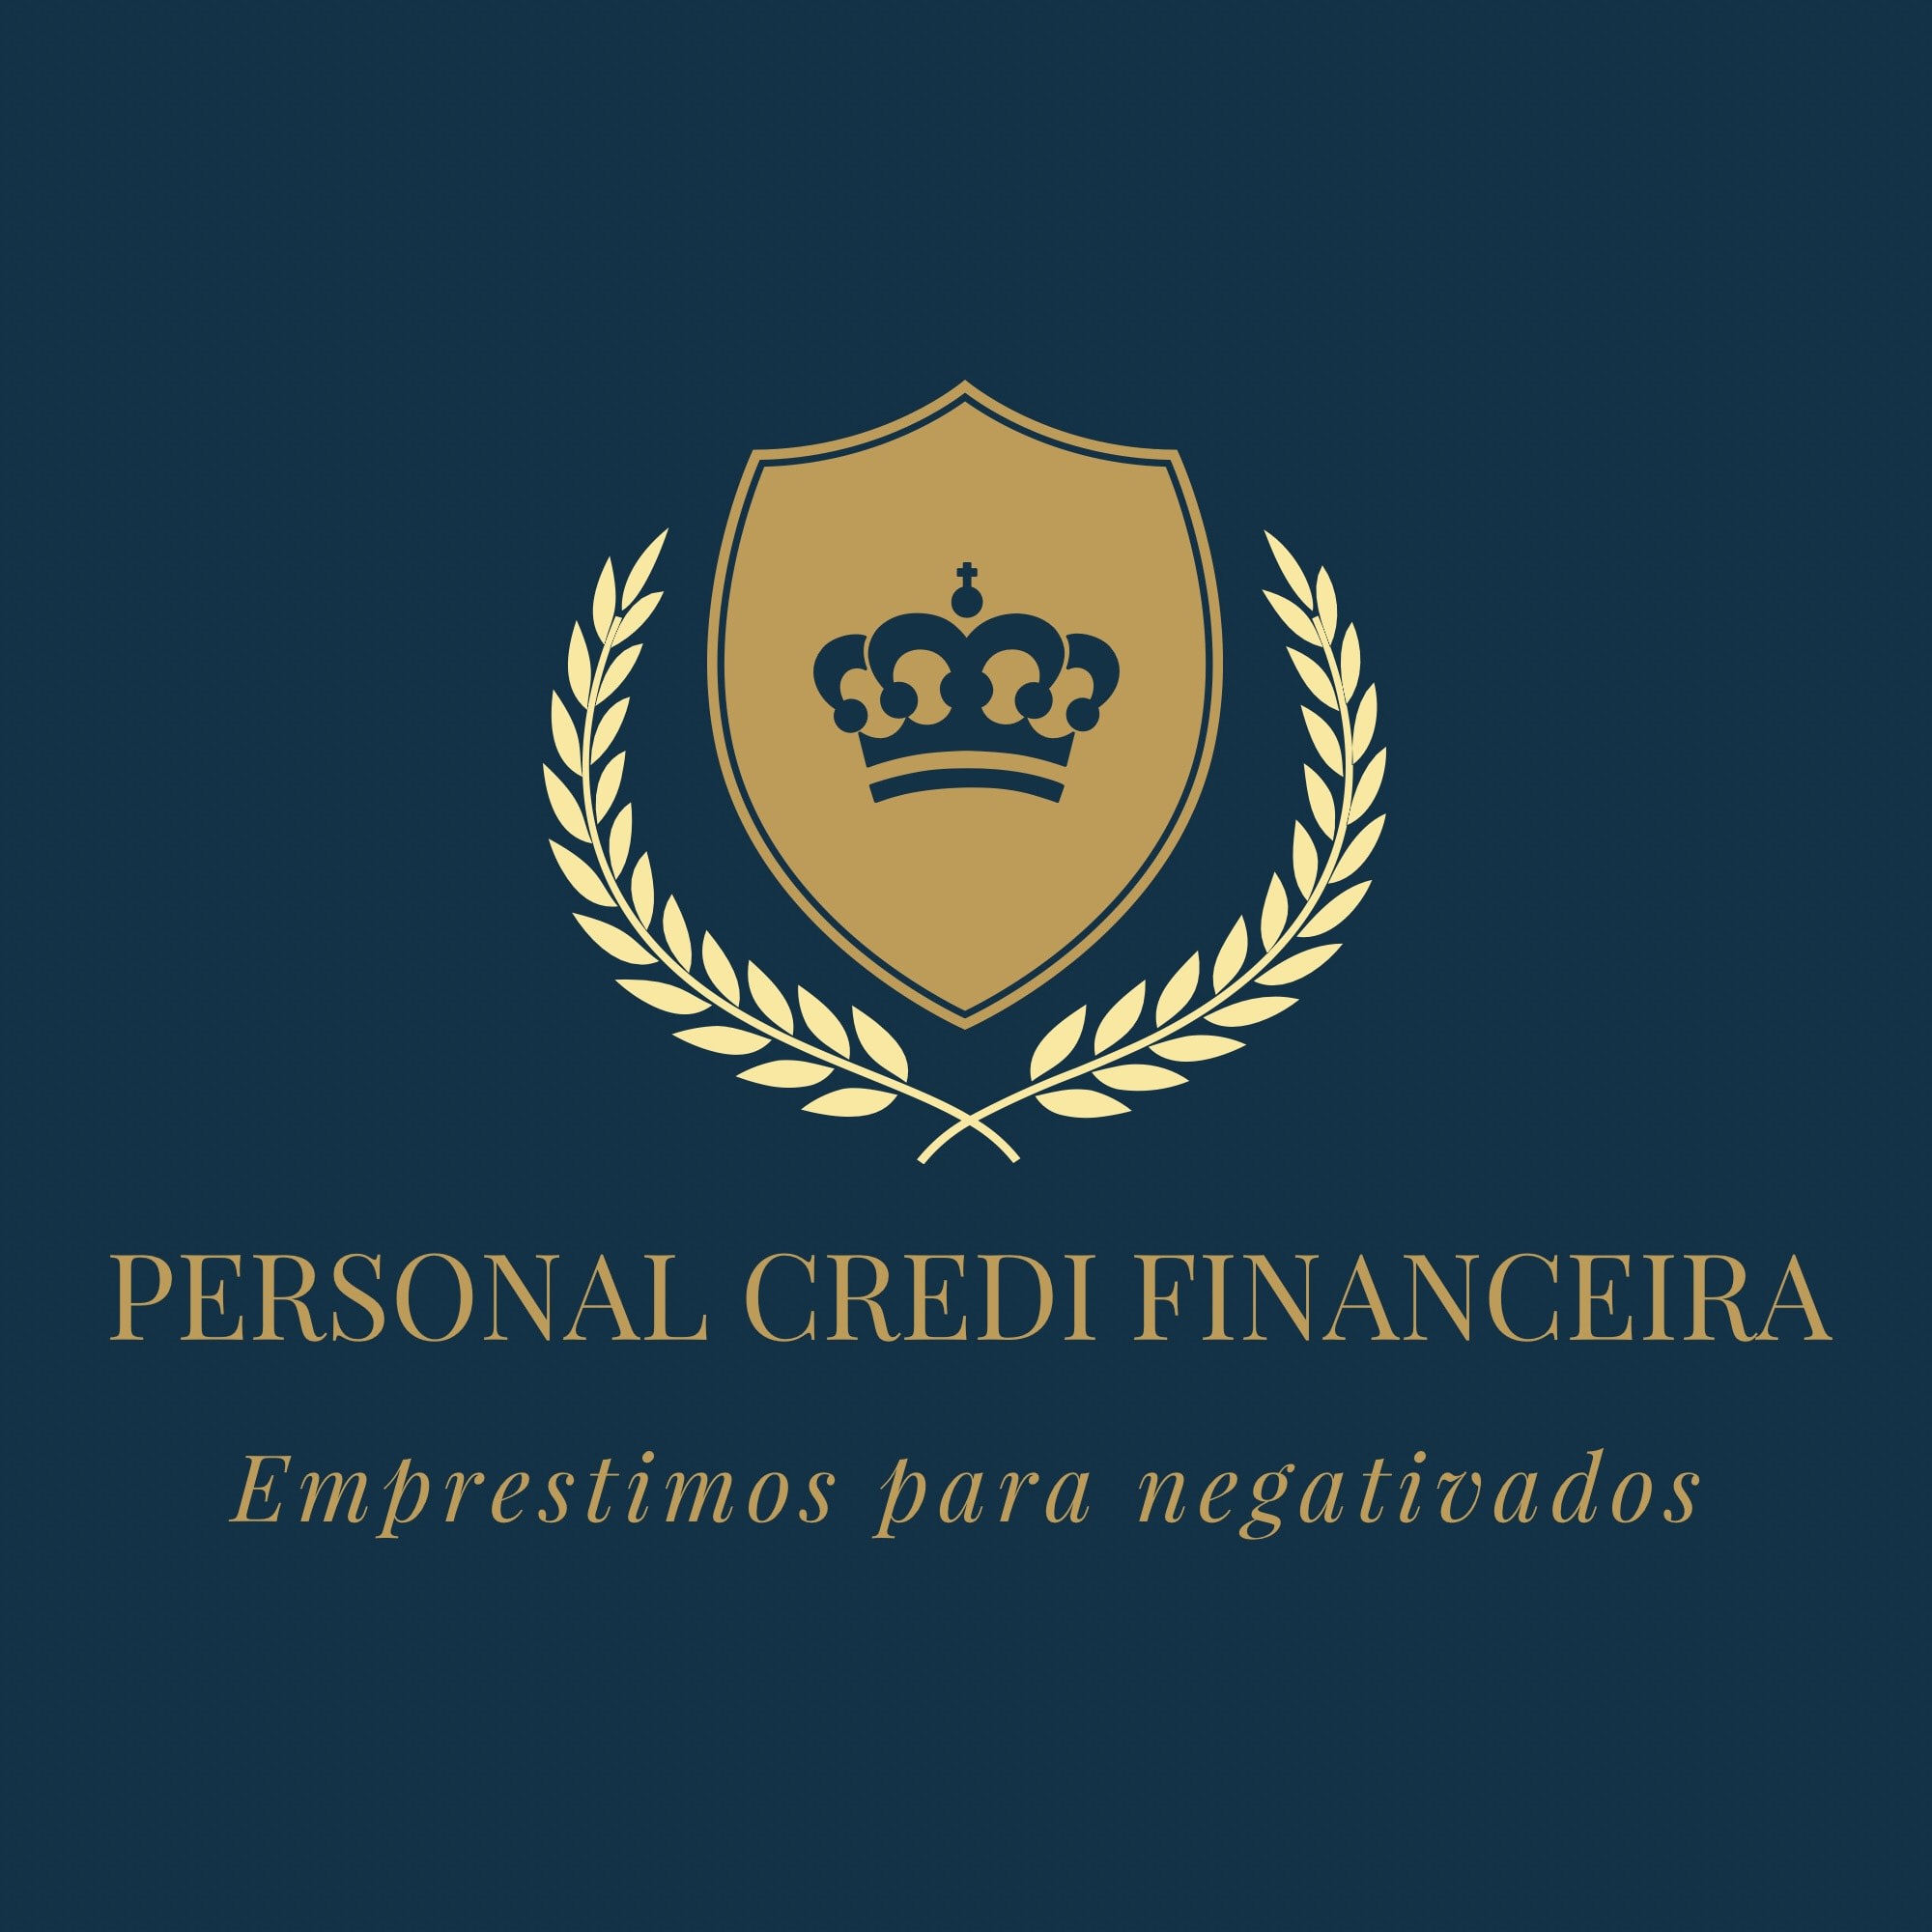 Personal Credi Financeira